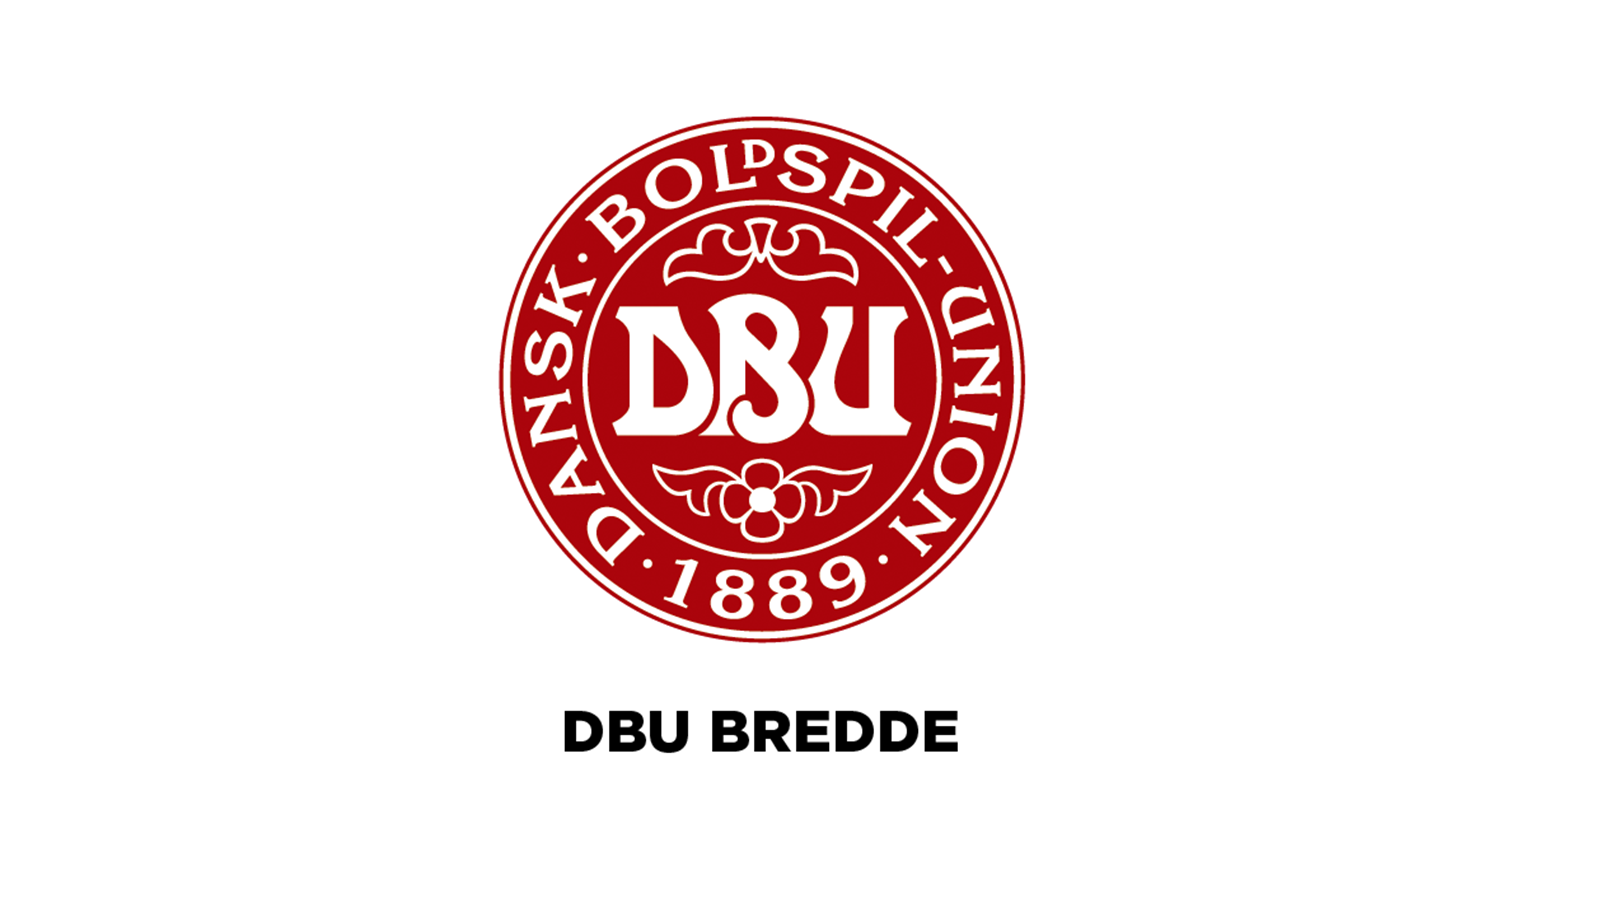 De københavnske klubber har stemt nej til reformen af DBU Bredde